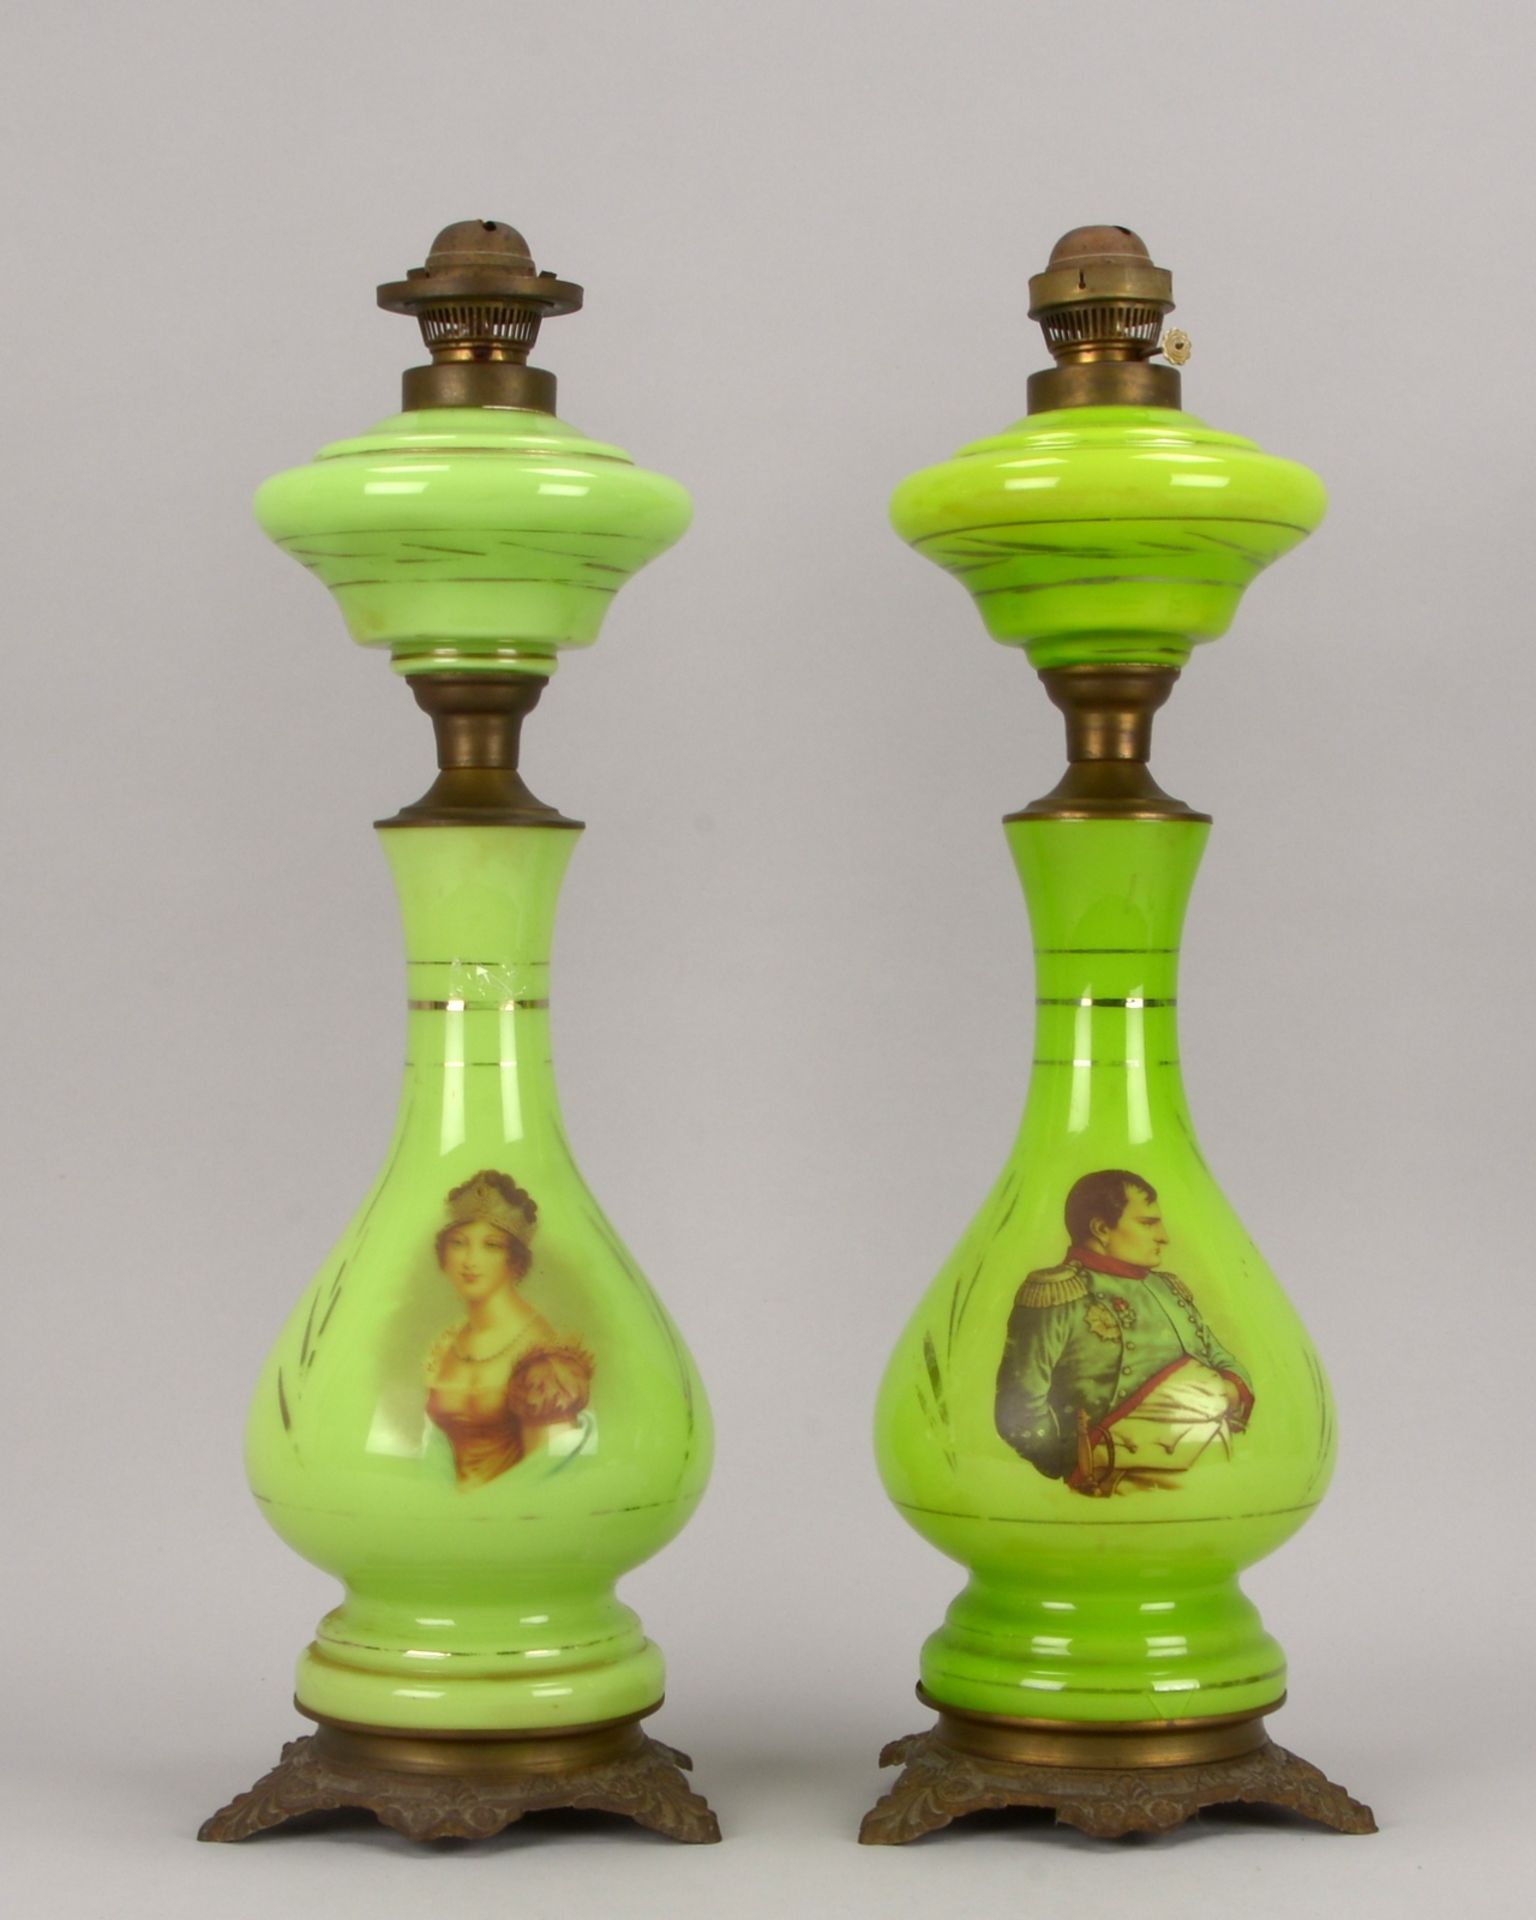 Paar gro&szlig;er Petroleumlampen (um 1900), gr&uuml;nes Glas, schauseitig mit Bildmotiven (Darstell